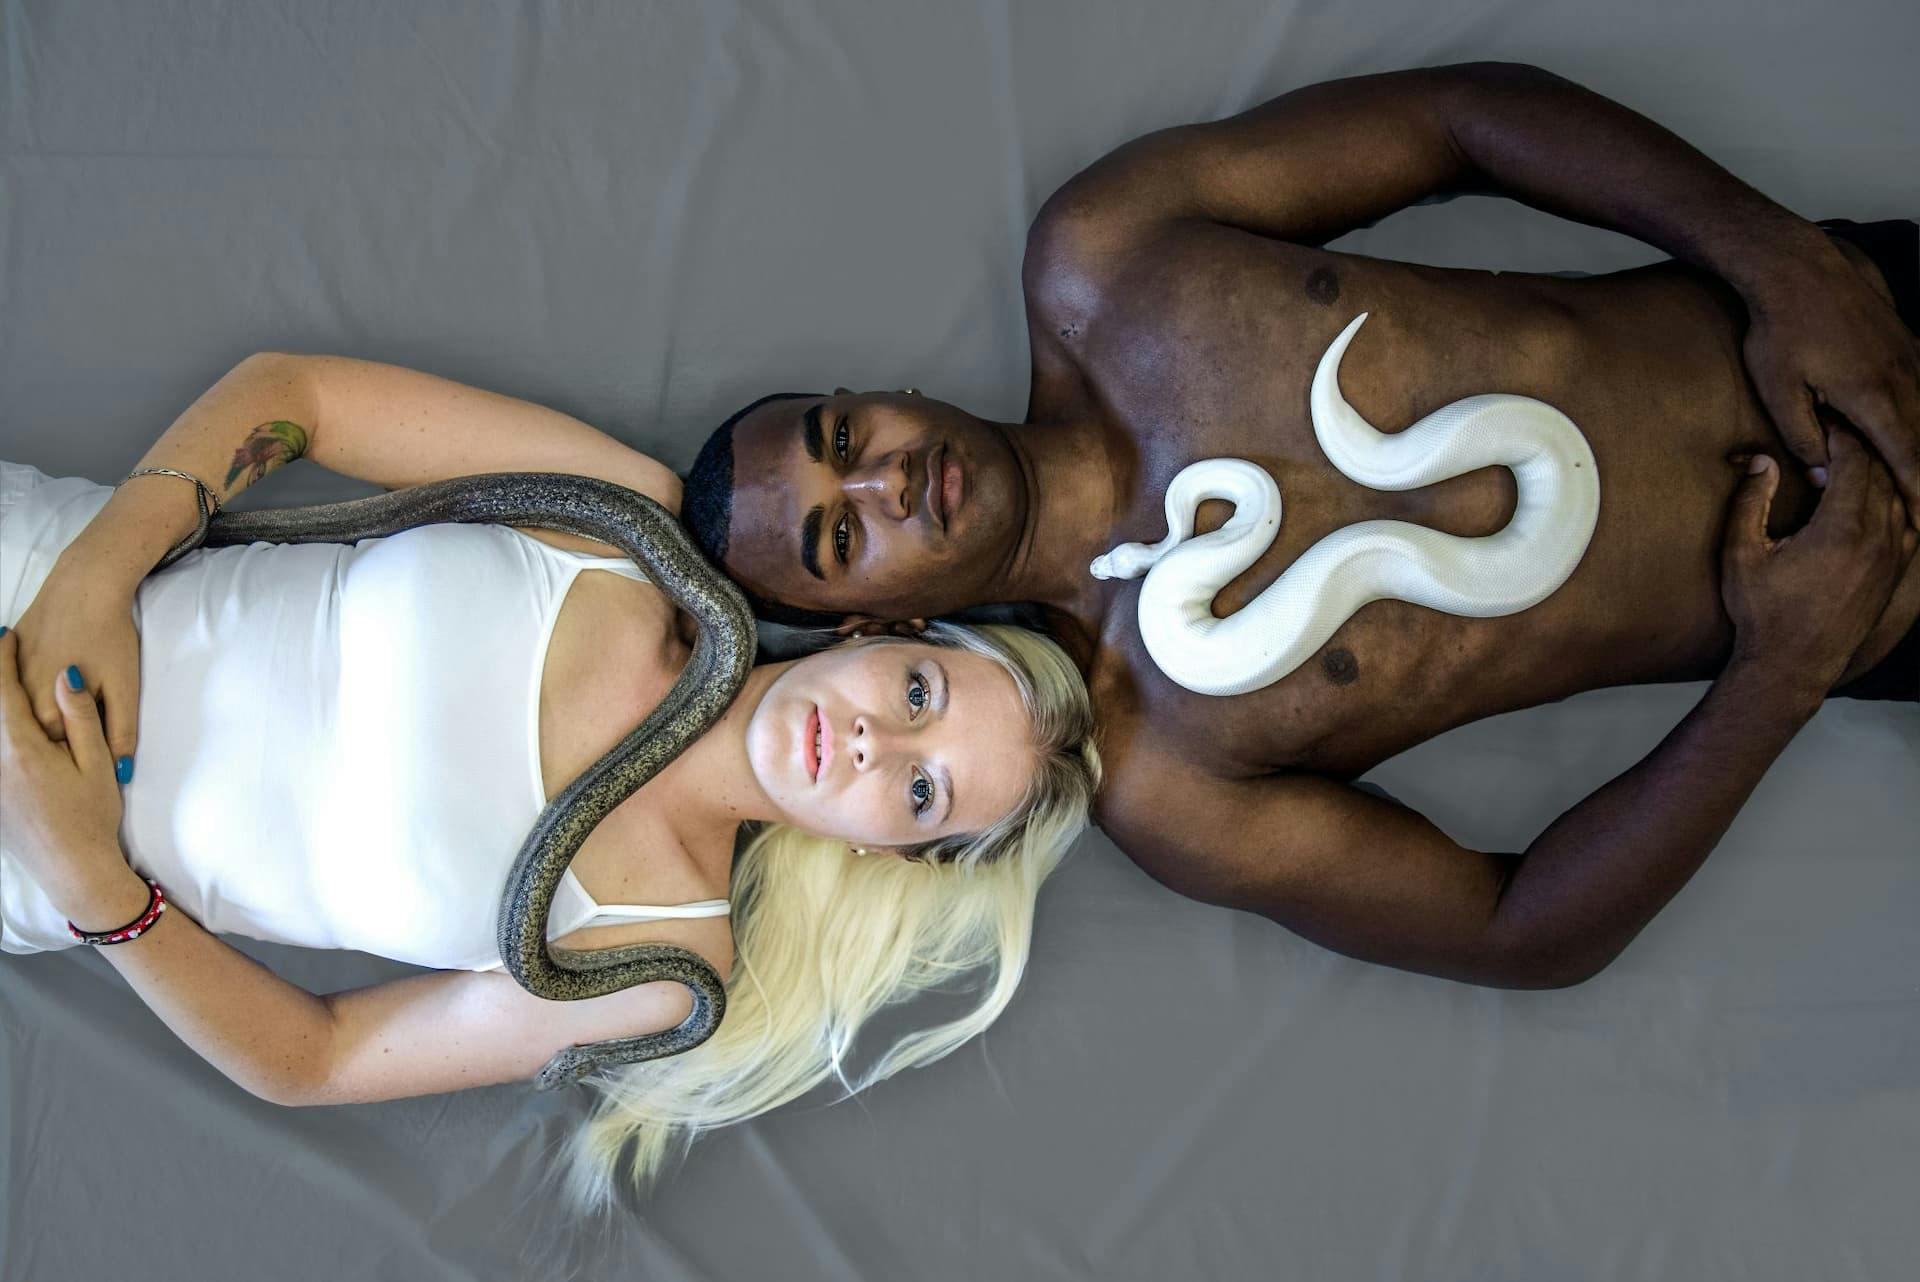 bianco nero opposti contrario serpente albino